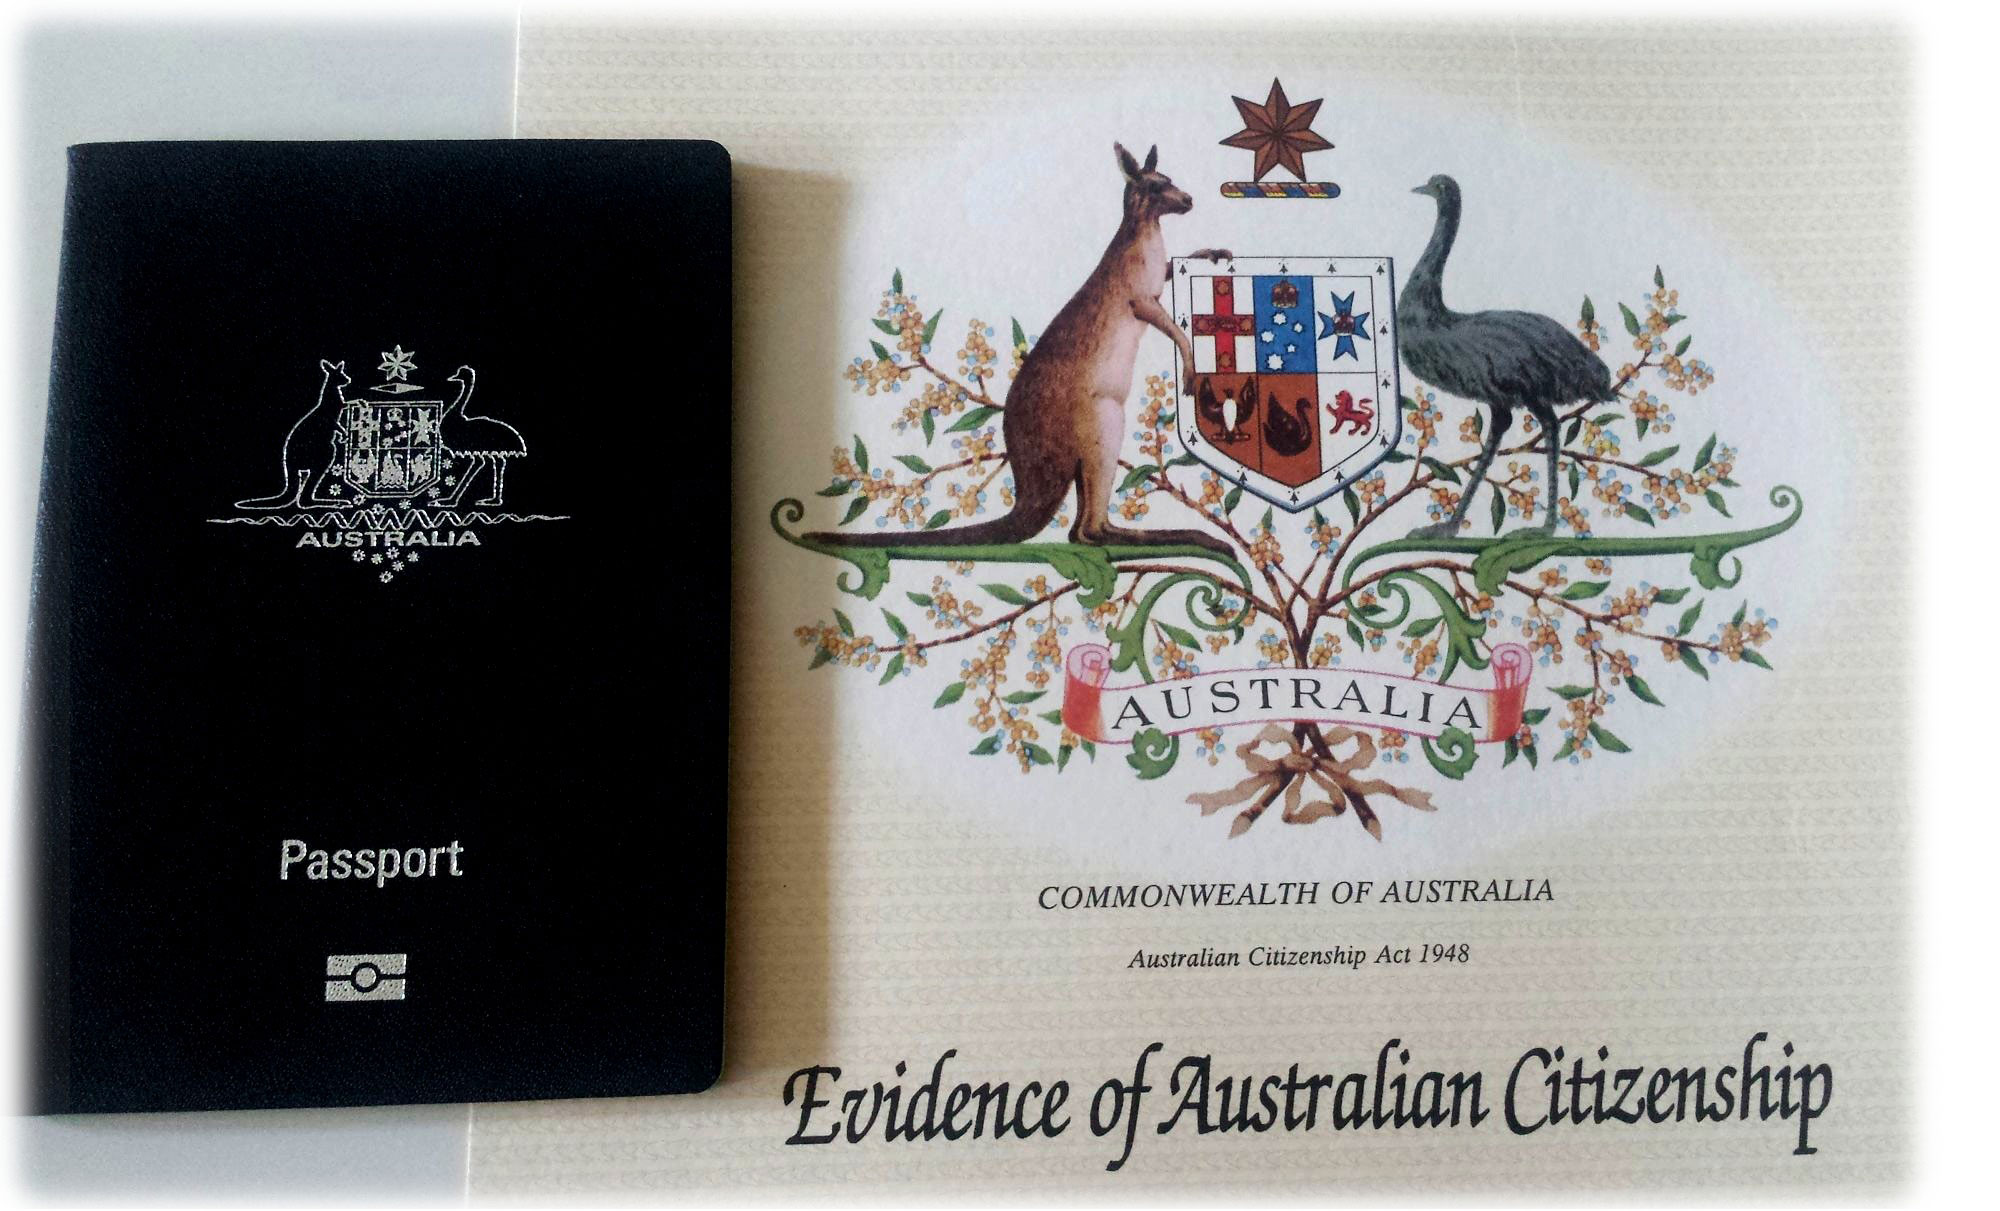 Australian passport and citizenship certificate.